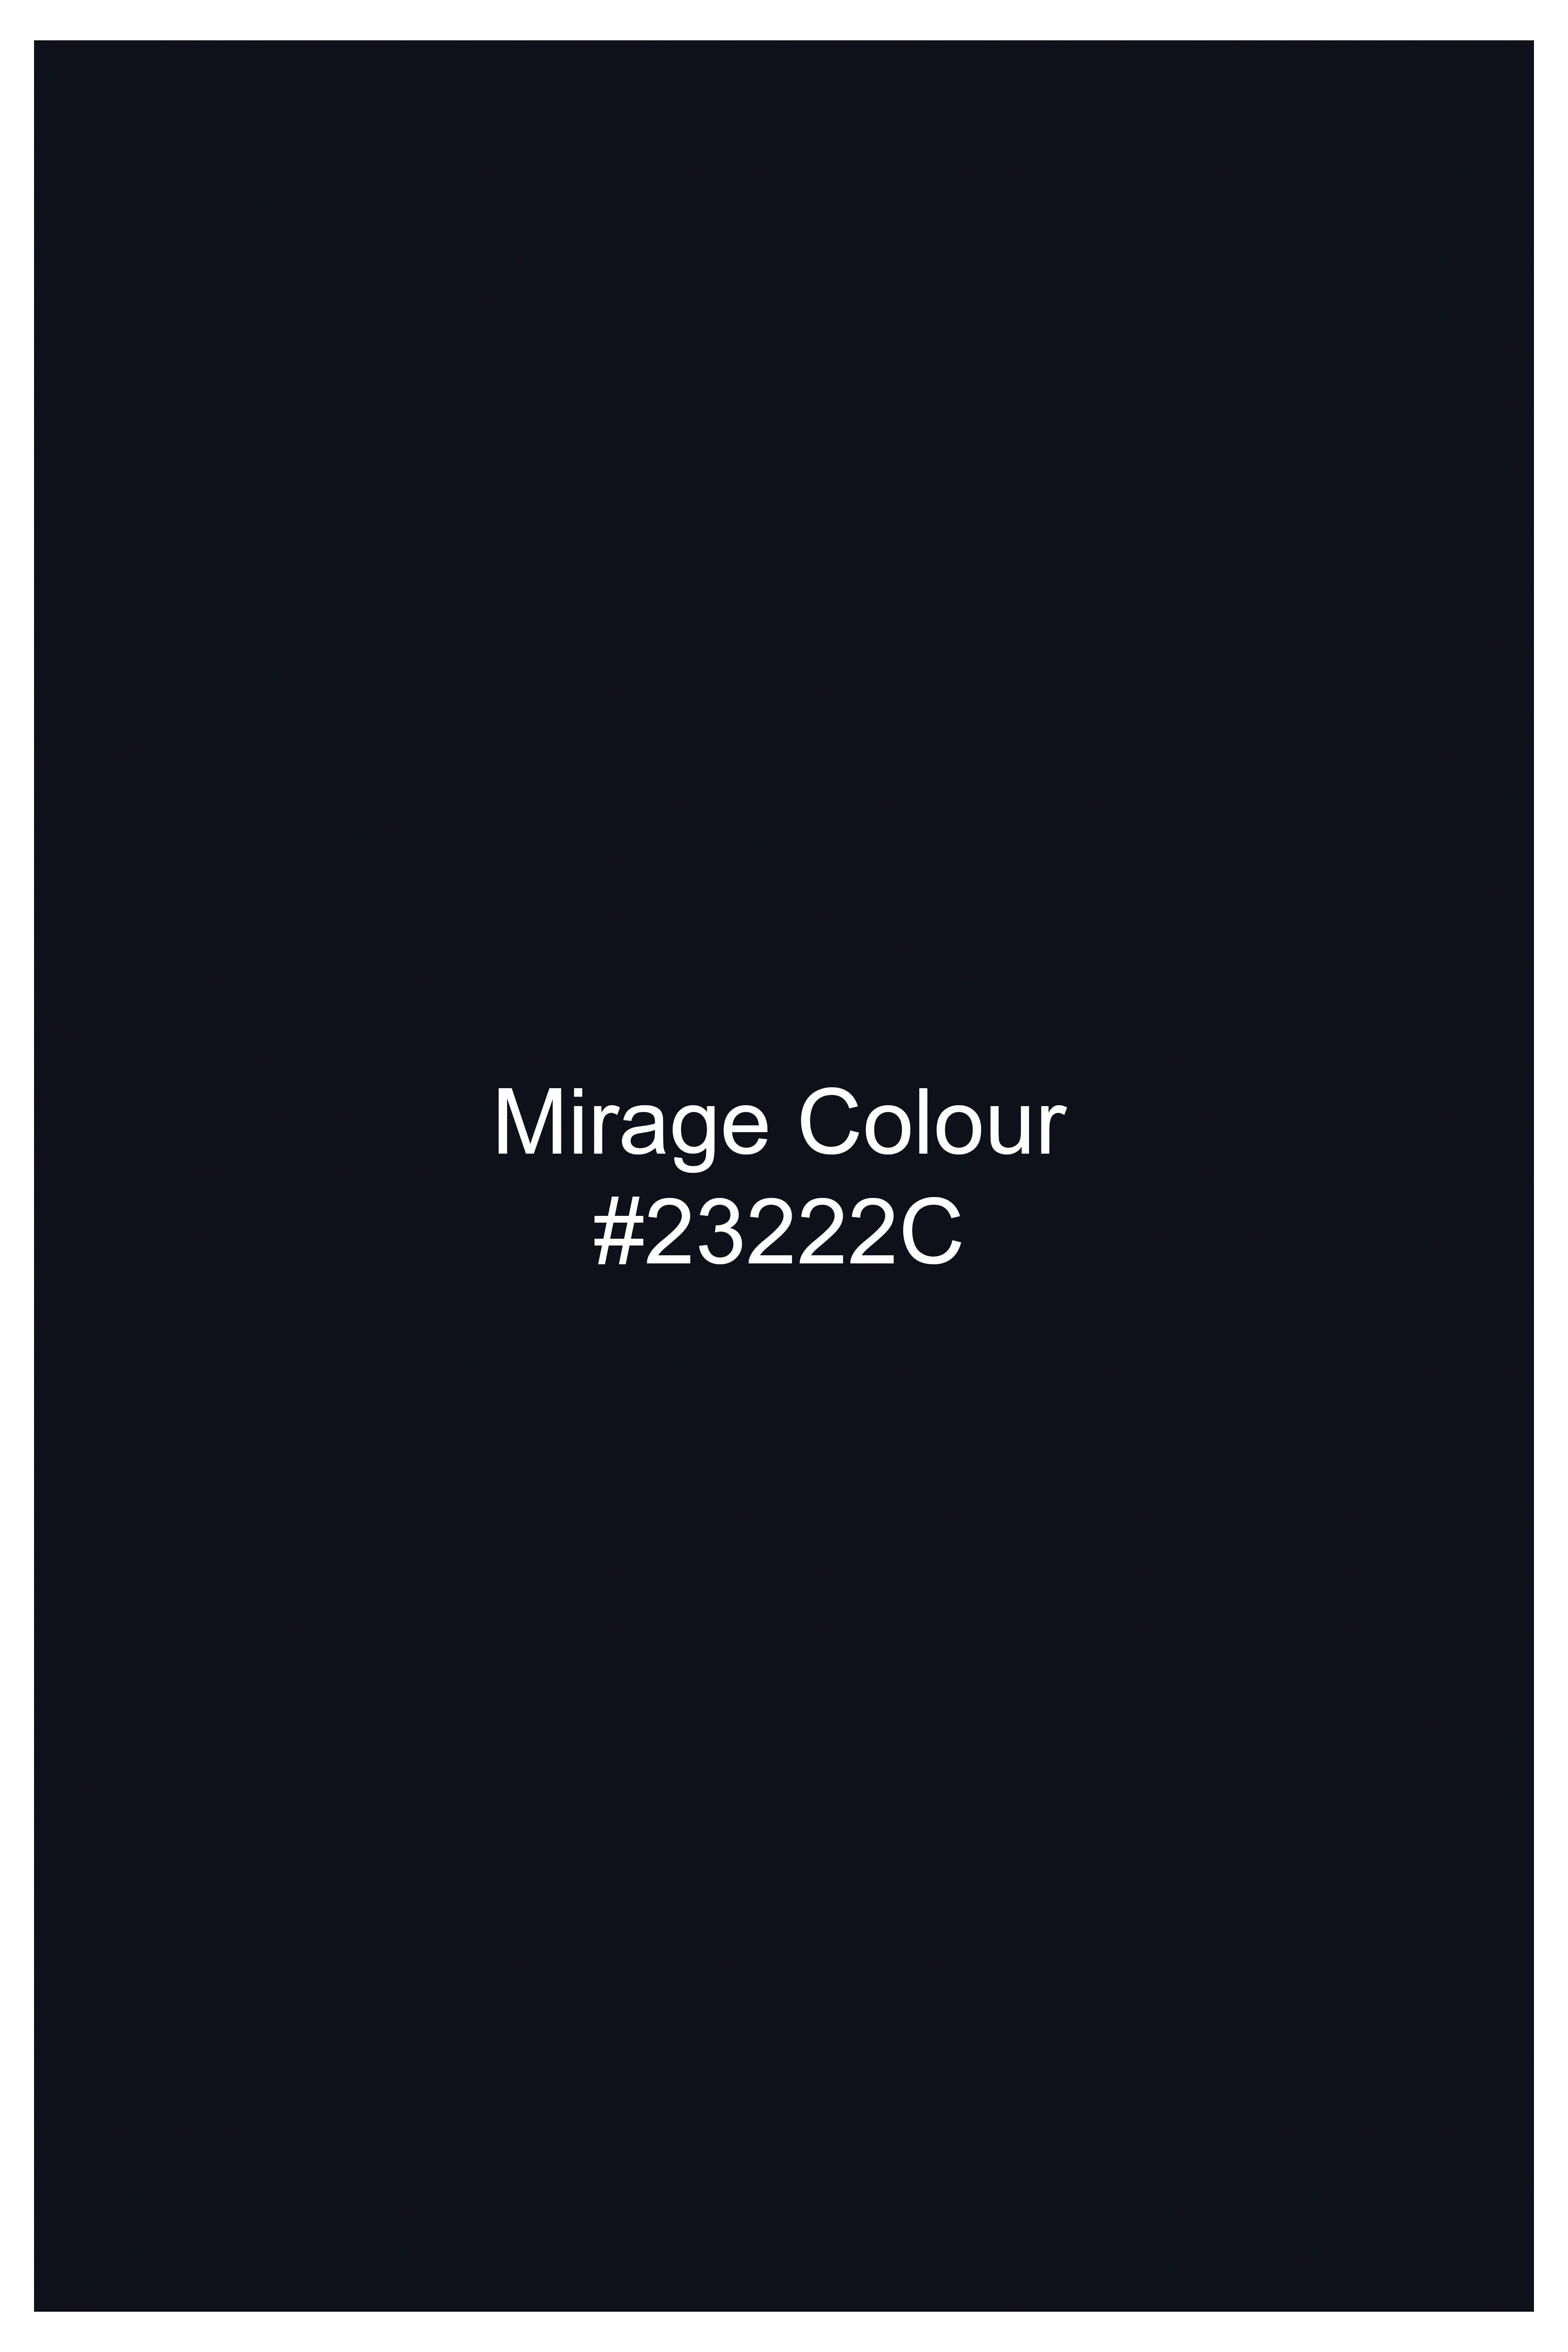 Mirage Blue Premium Cotton Waistcoat V2759-36, V2759-38, V2759-40, V2759-42, V2759-44, V2759-46, V2759-48, V2759-50, V2759-52, V2759-54, V2759-56, V2759-58, V2759-60